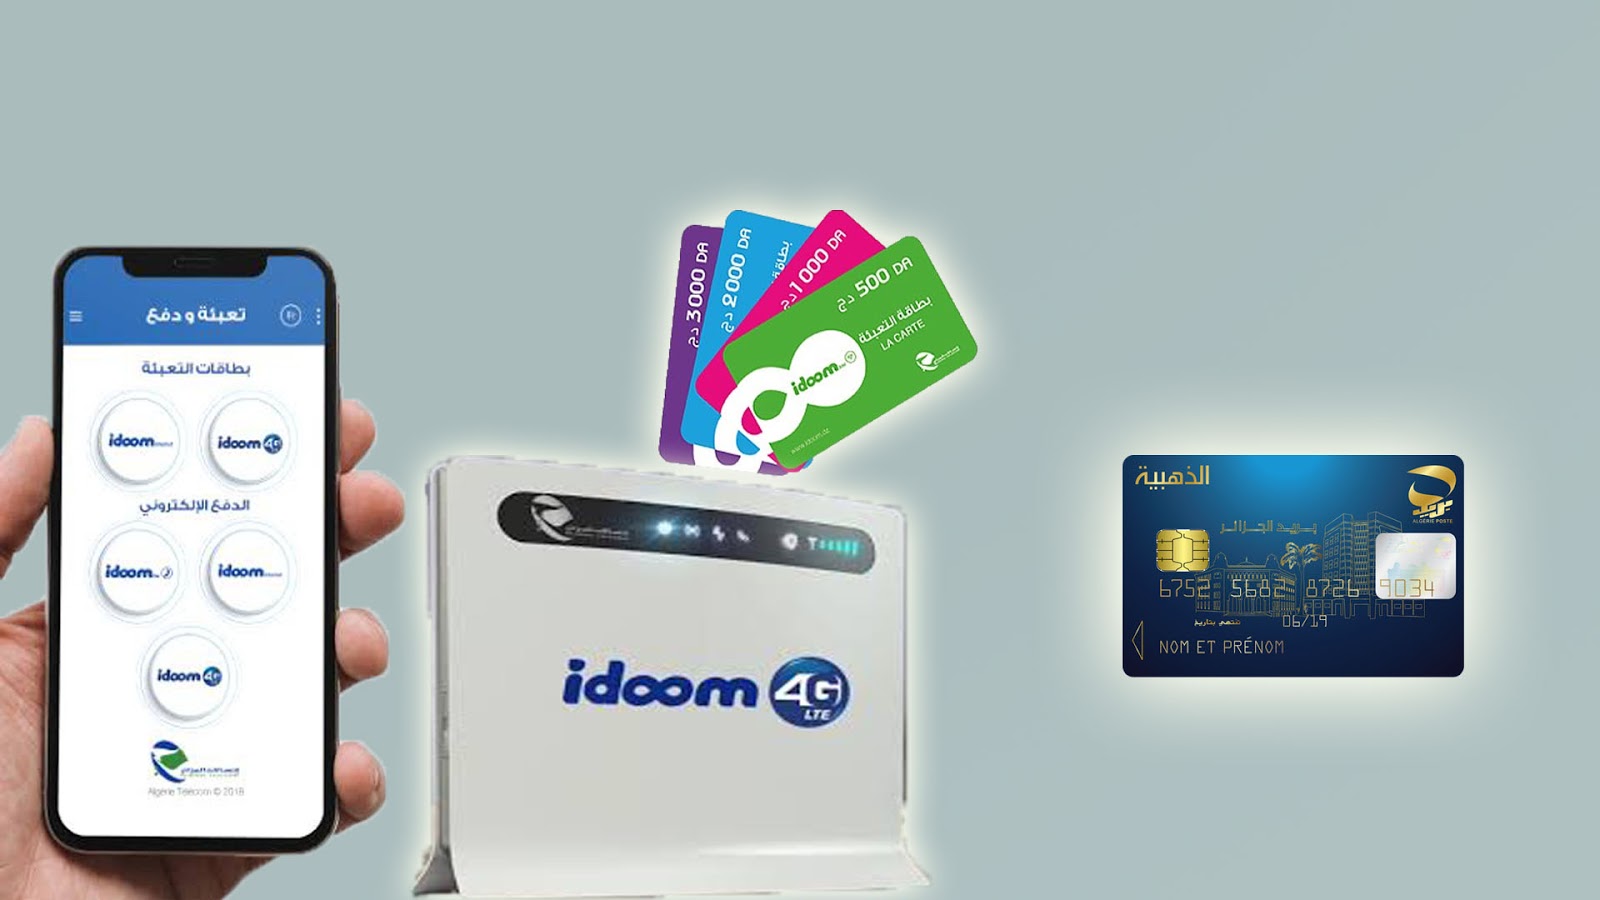 تعبئة رصيد adsl عن طريق النت الجزائر يظهر وجهة E-paiement على الهاتف وبطاقة الذهبية وراوتر Idoom 4G 